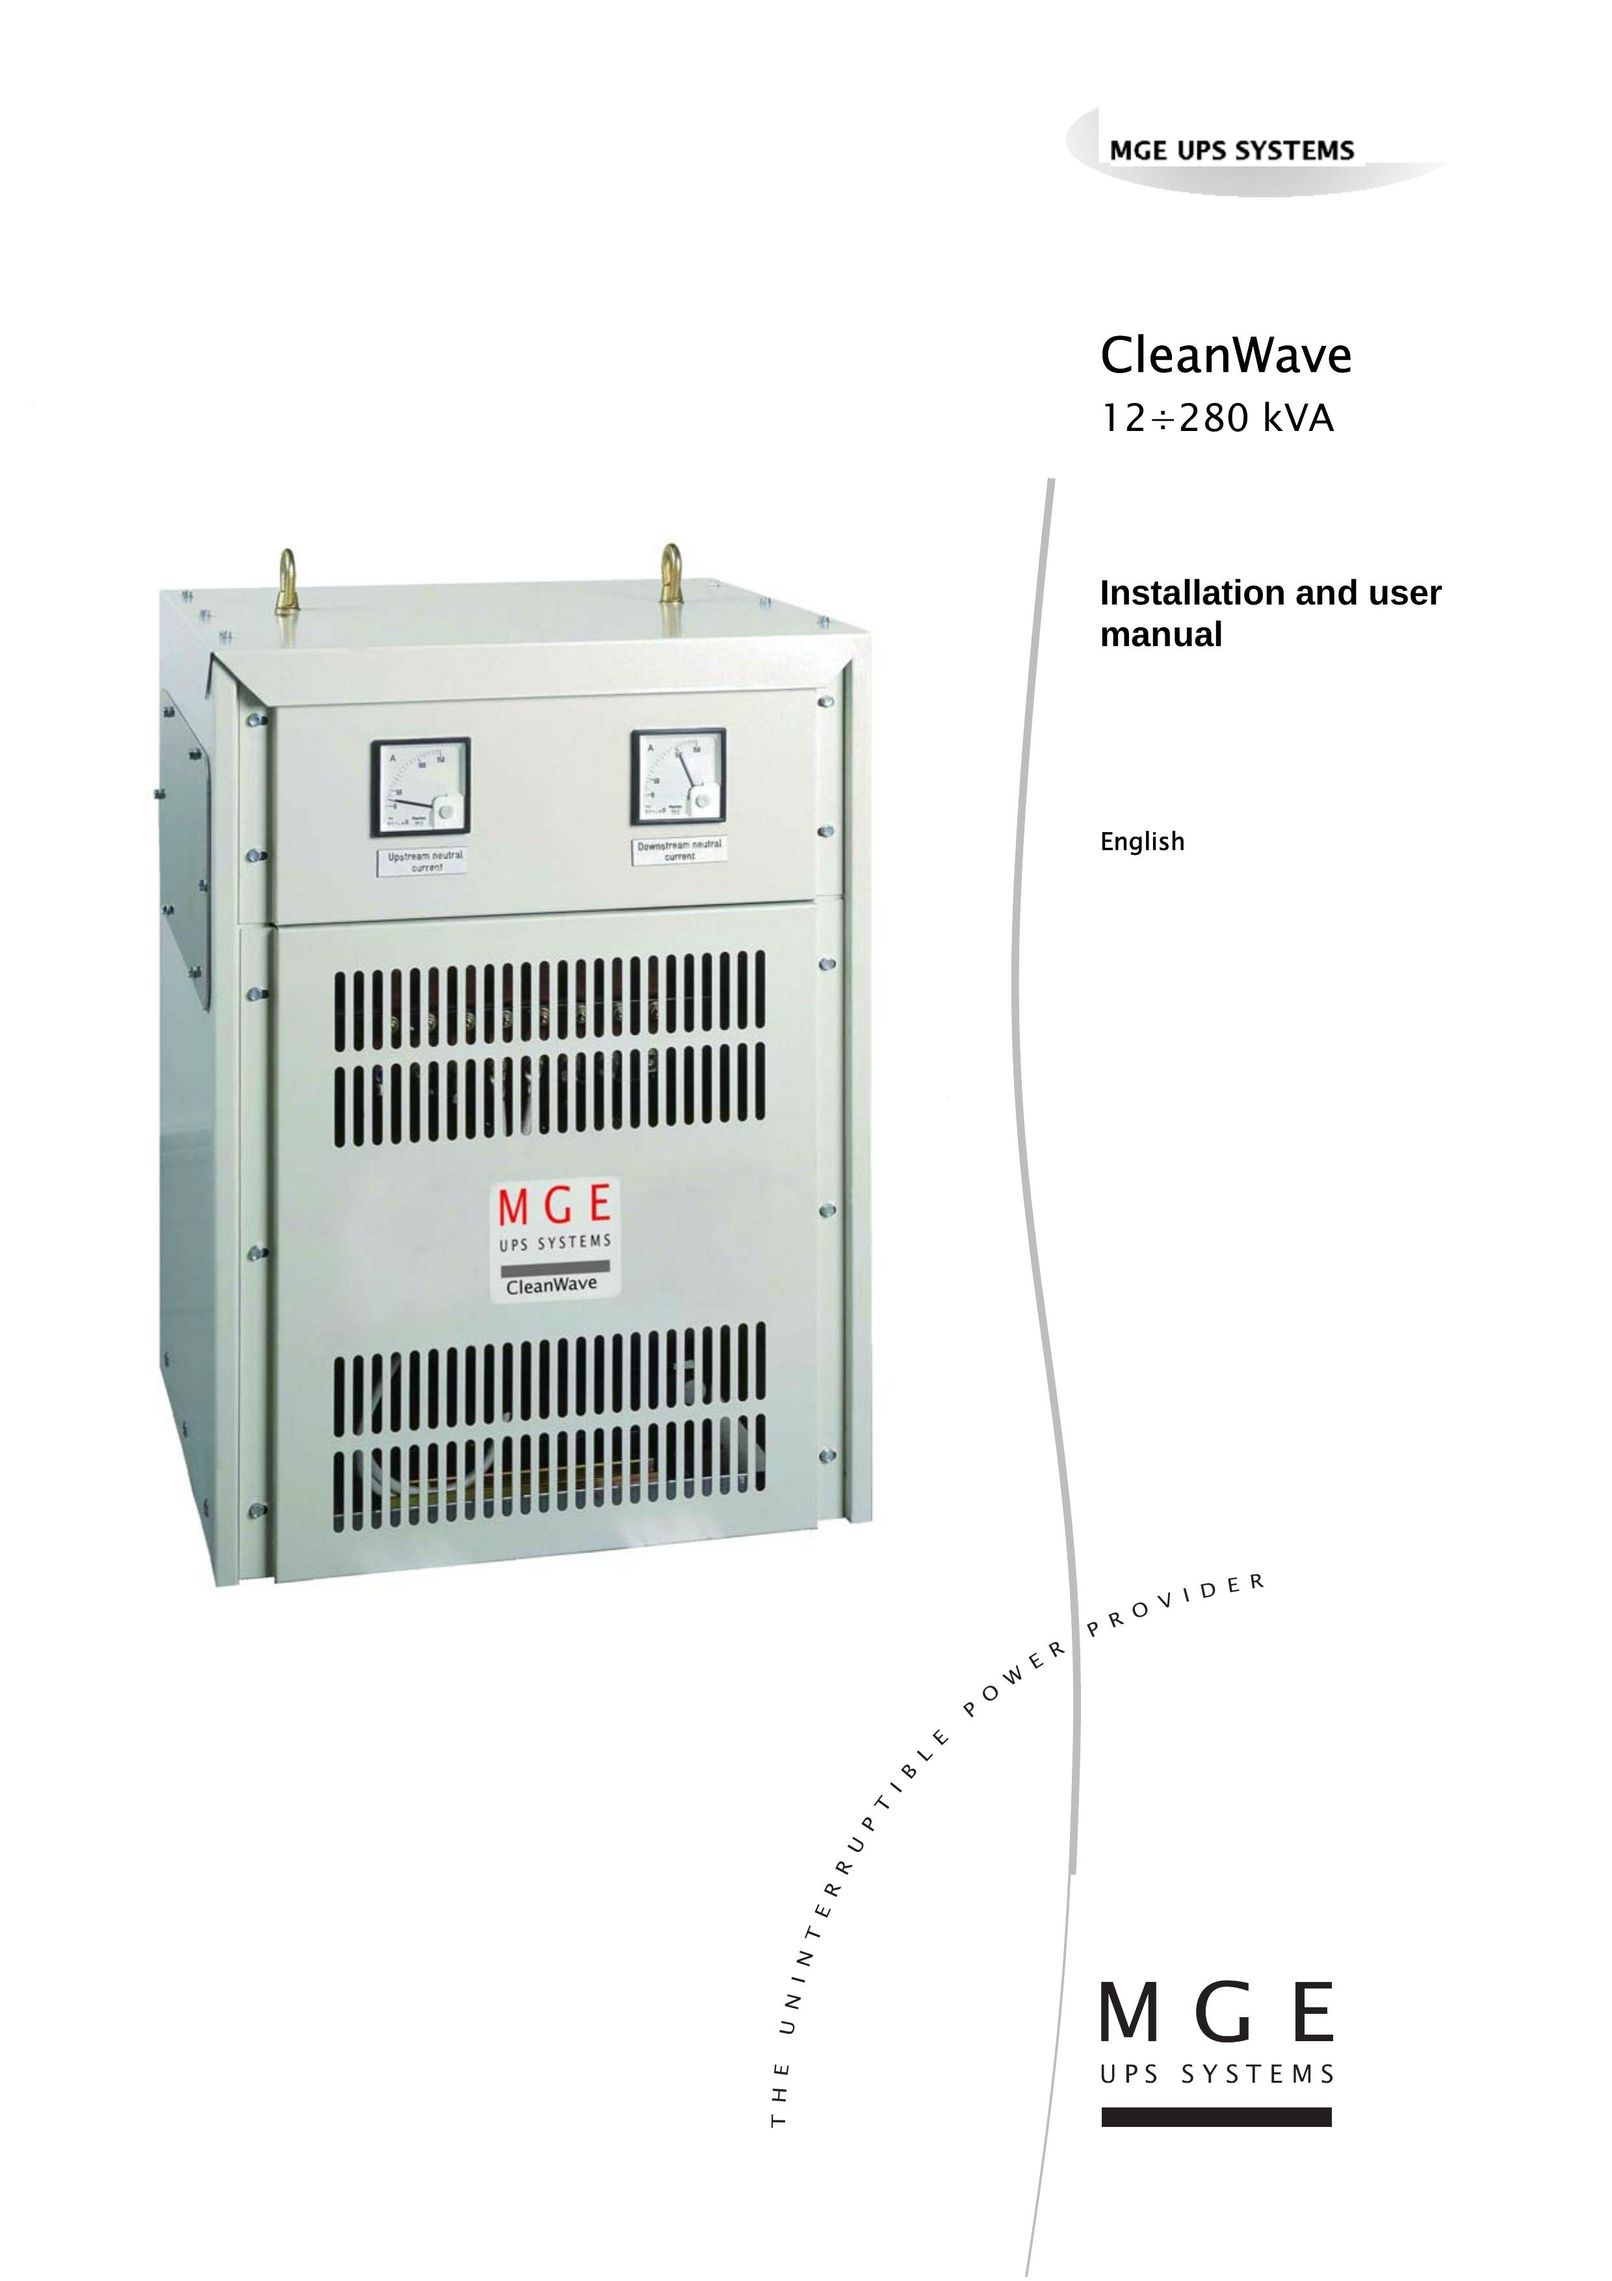 MGE UPS Systems 12280 kVA Power Supply User Manual